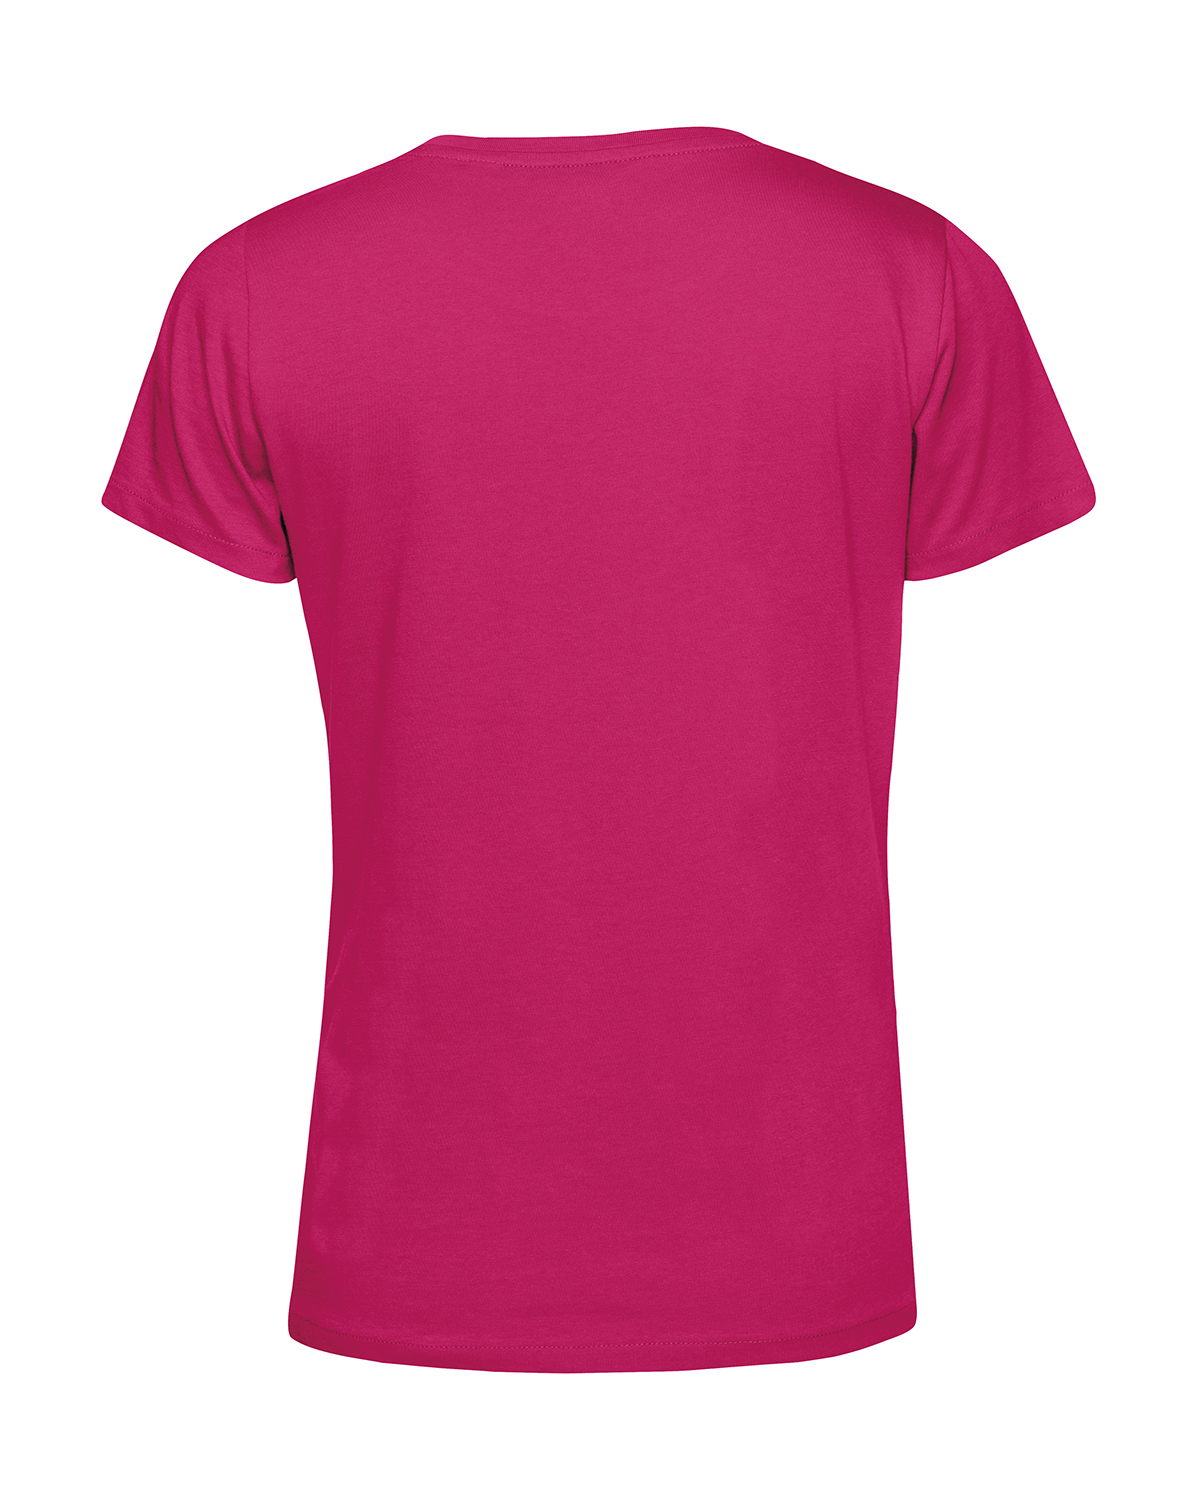 Nachhaltiges T-Shirt Damen 2Takt - Wenn Du keine besitzt Schwalbe